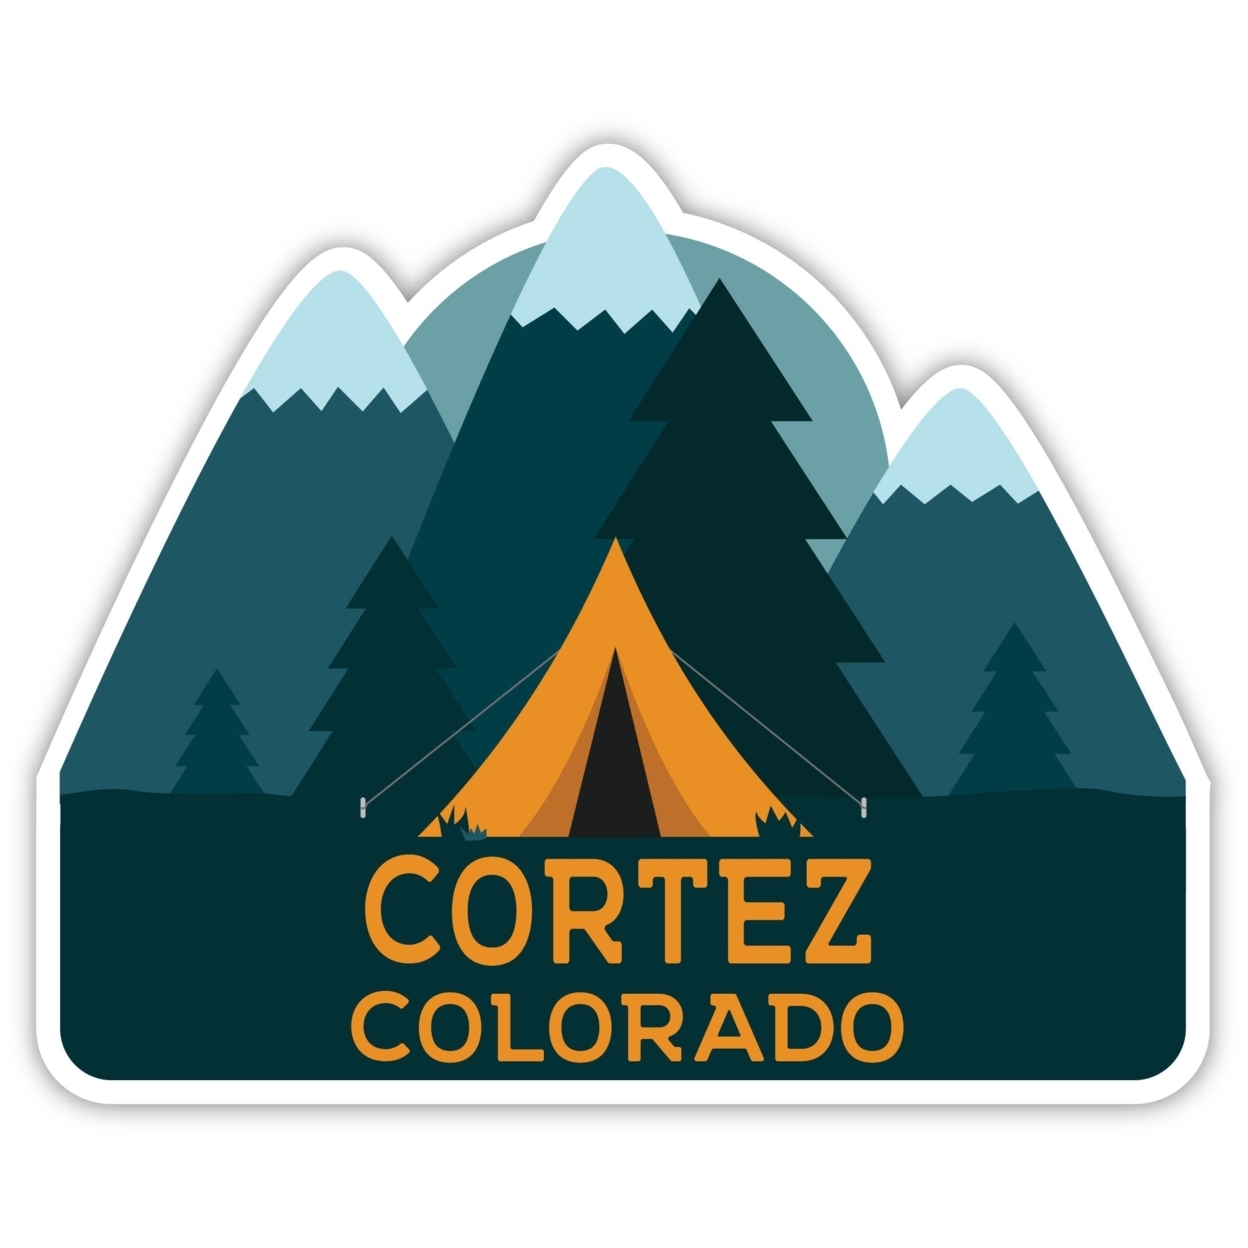 Cortez Colorado Souvenir Decorative Stickers (Choose Theme And Size) - Single Unit, 4-Inch, Tent